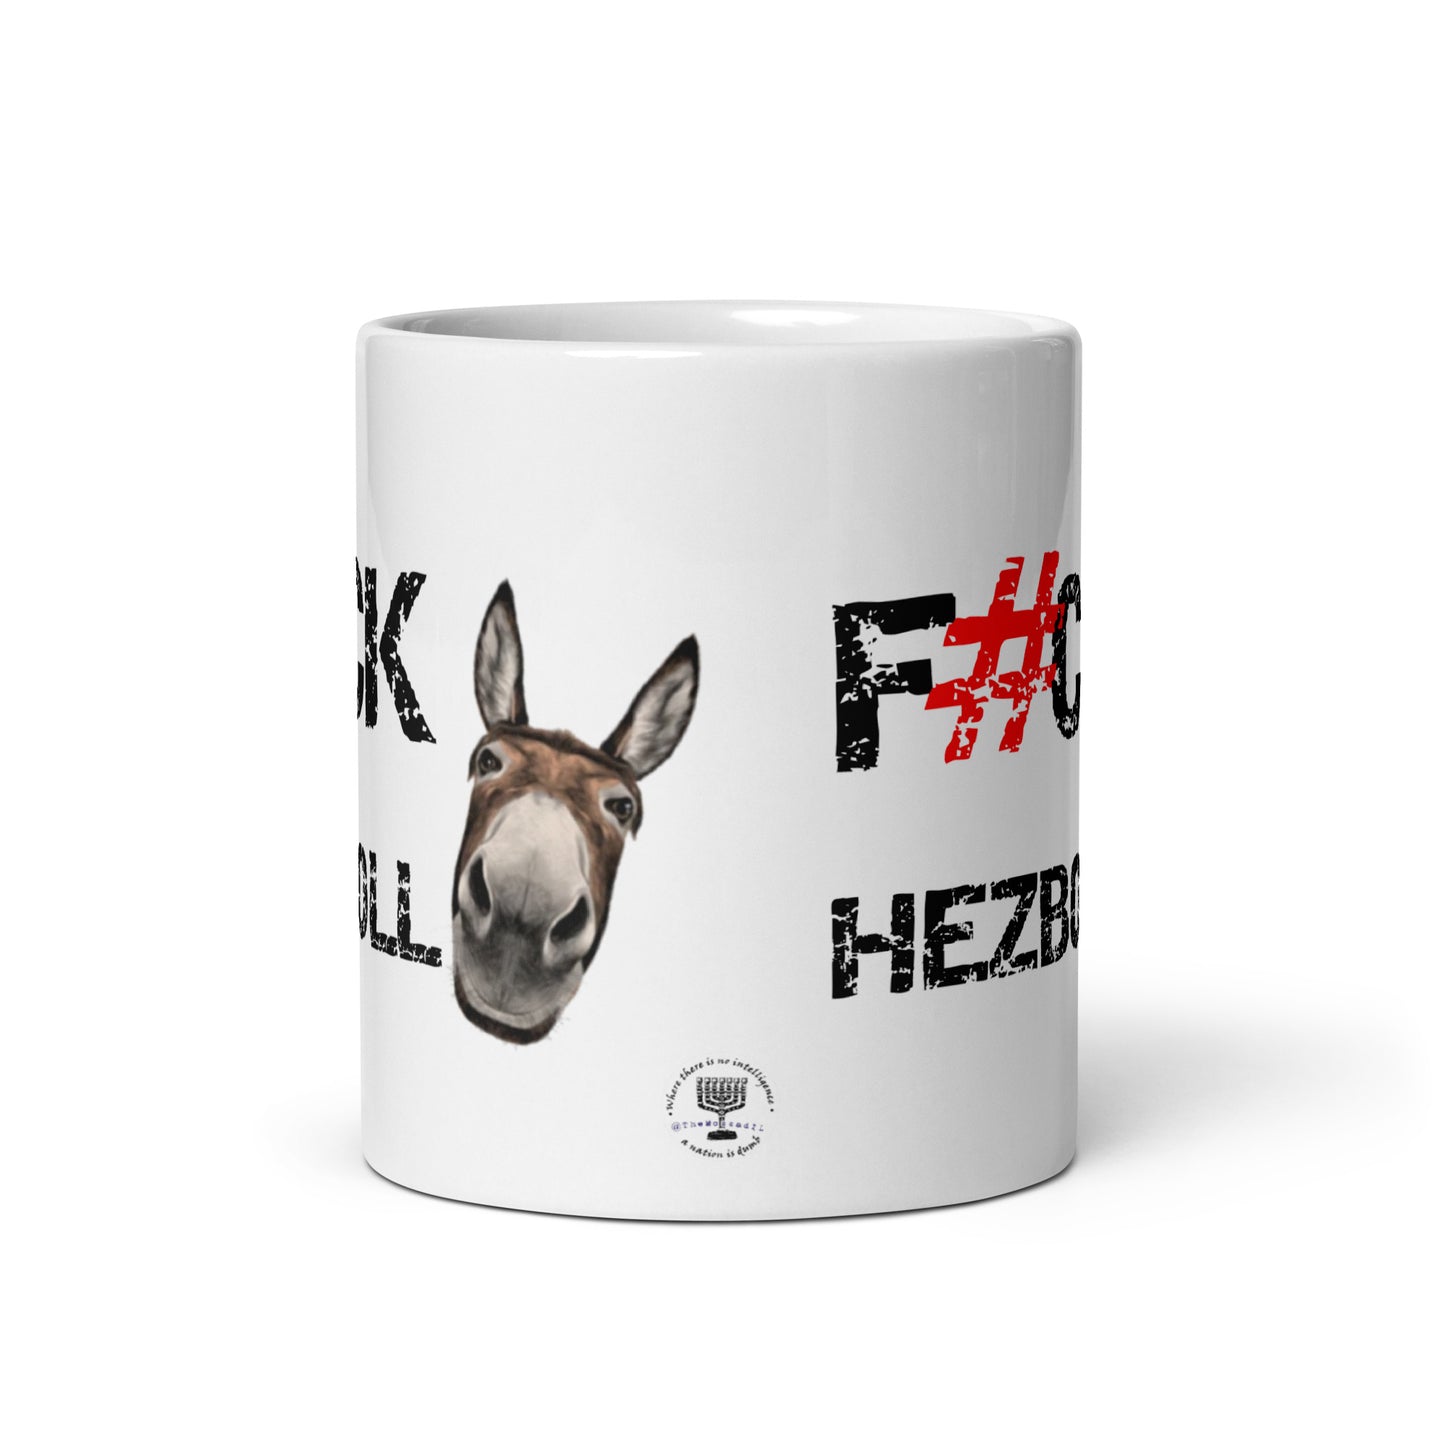 F#CK HEZBOLLASS White glossy mug